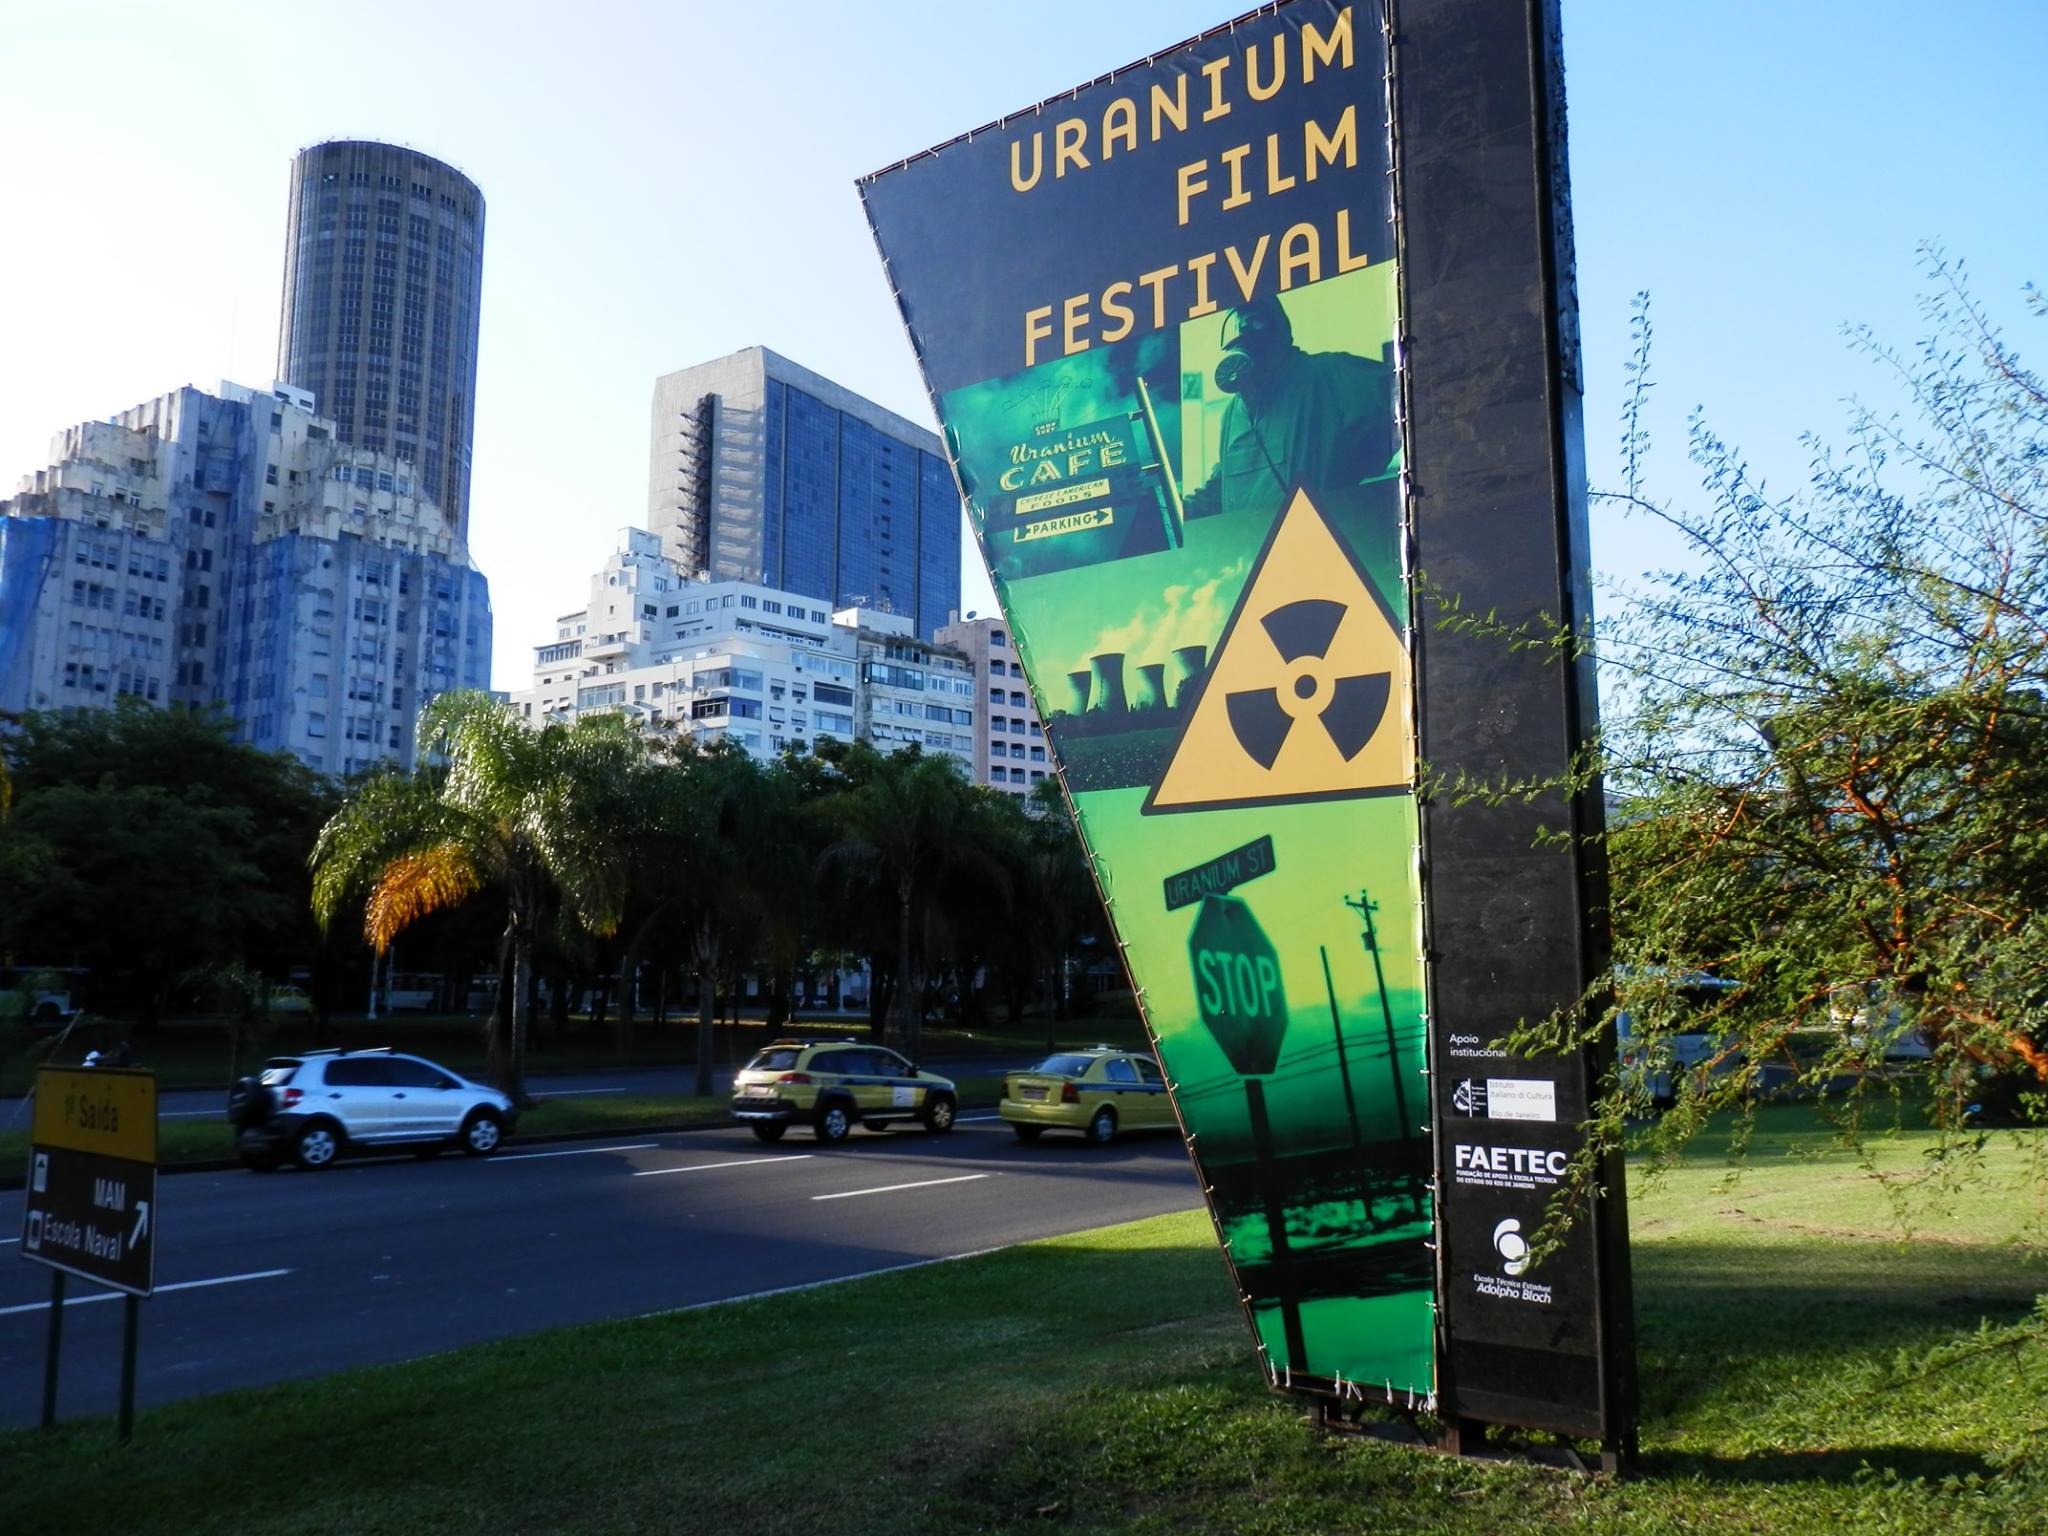 Uranium Film Festival